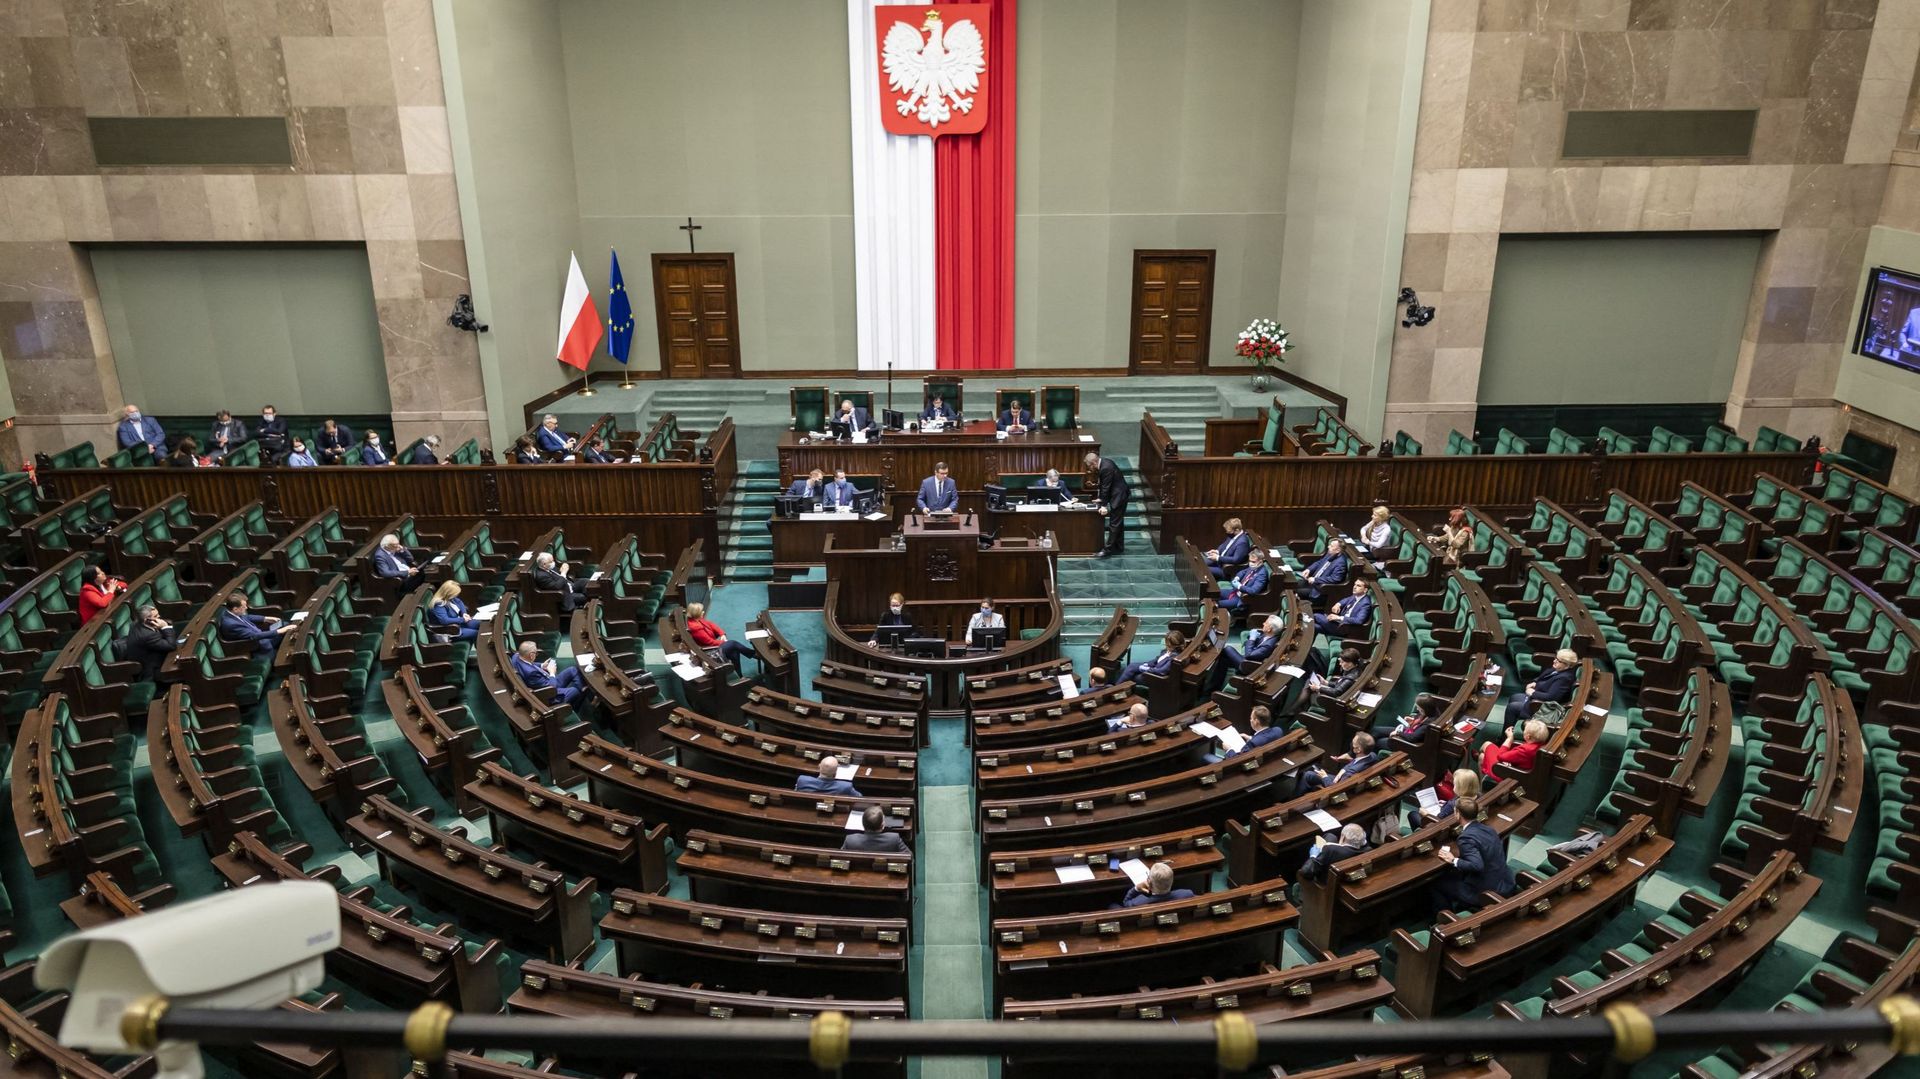 Le parlement polonais débat d'une nouvelle loi anti-LGBTQI+